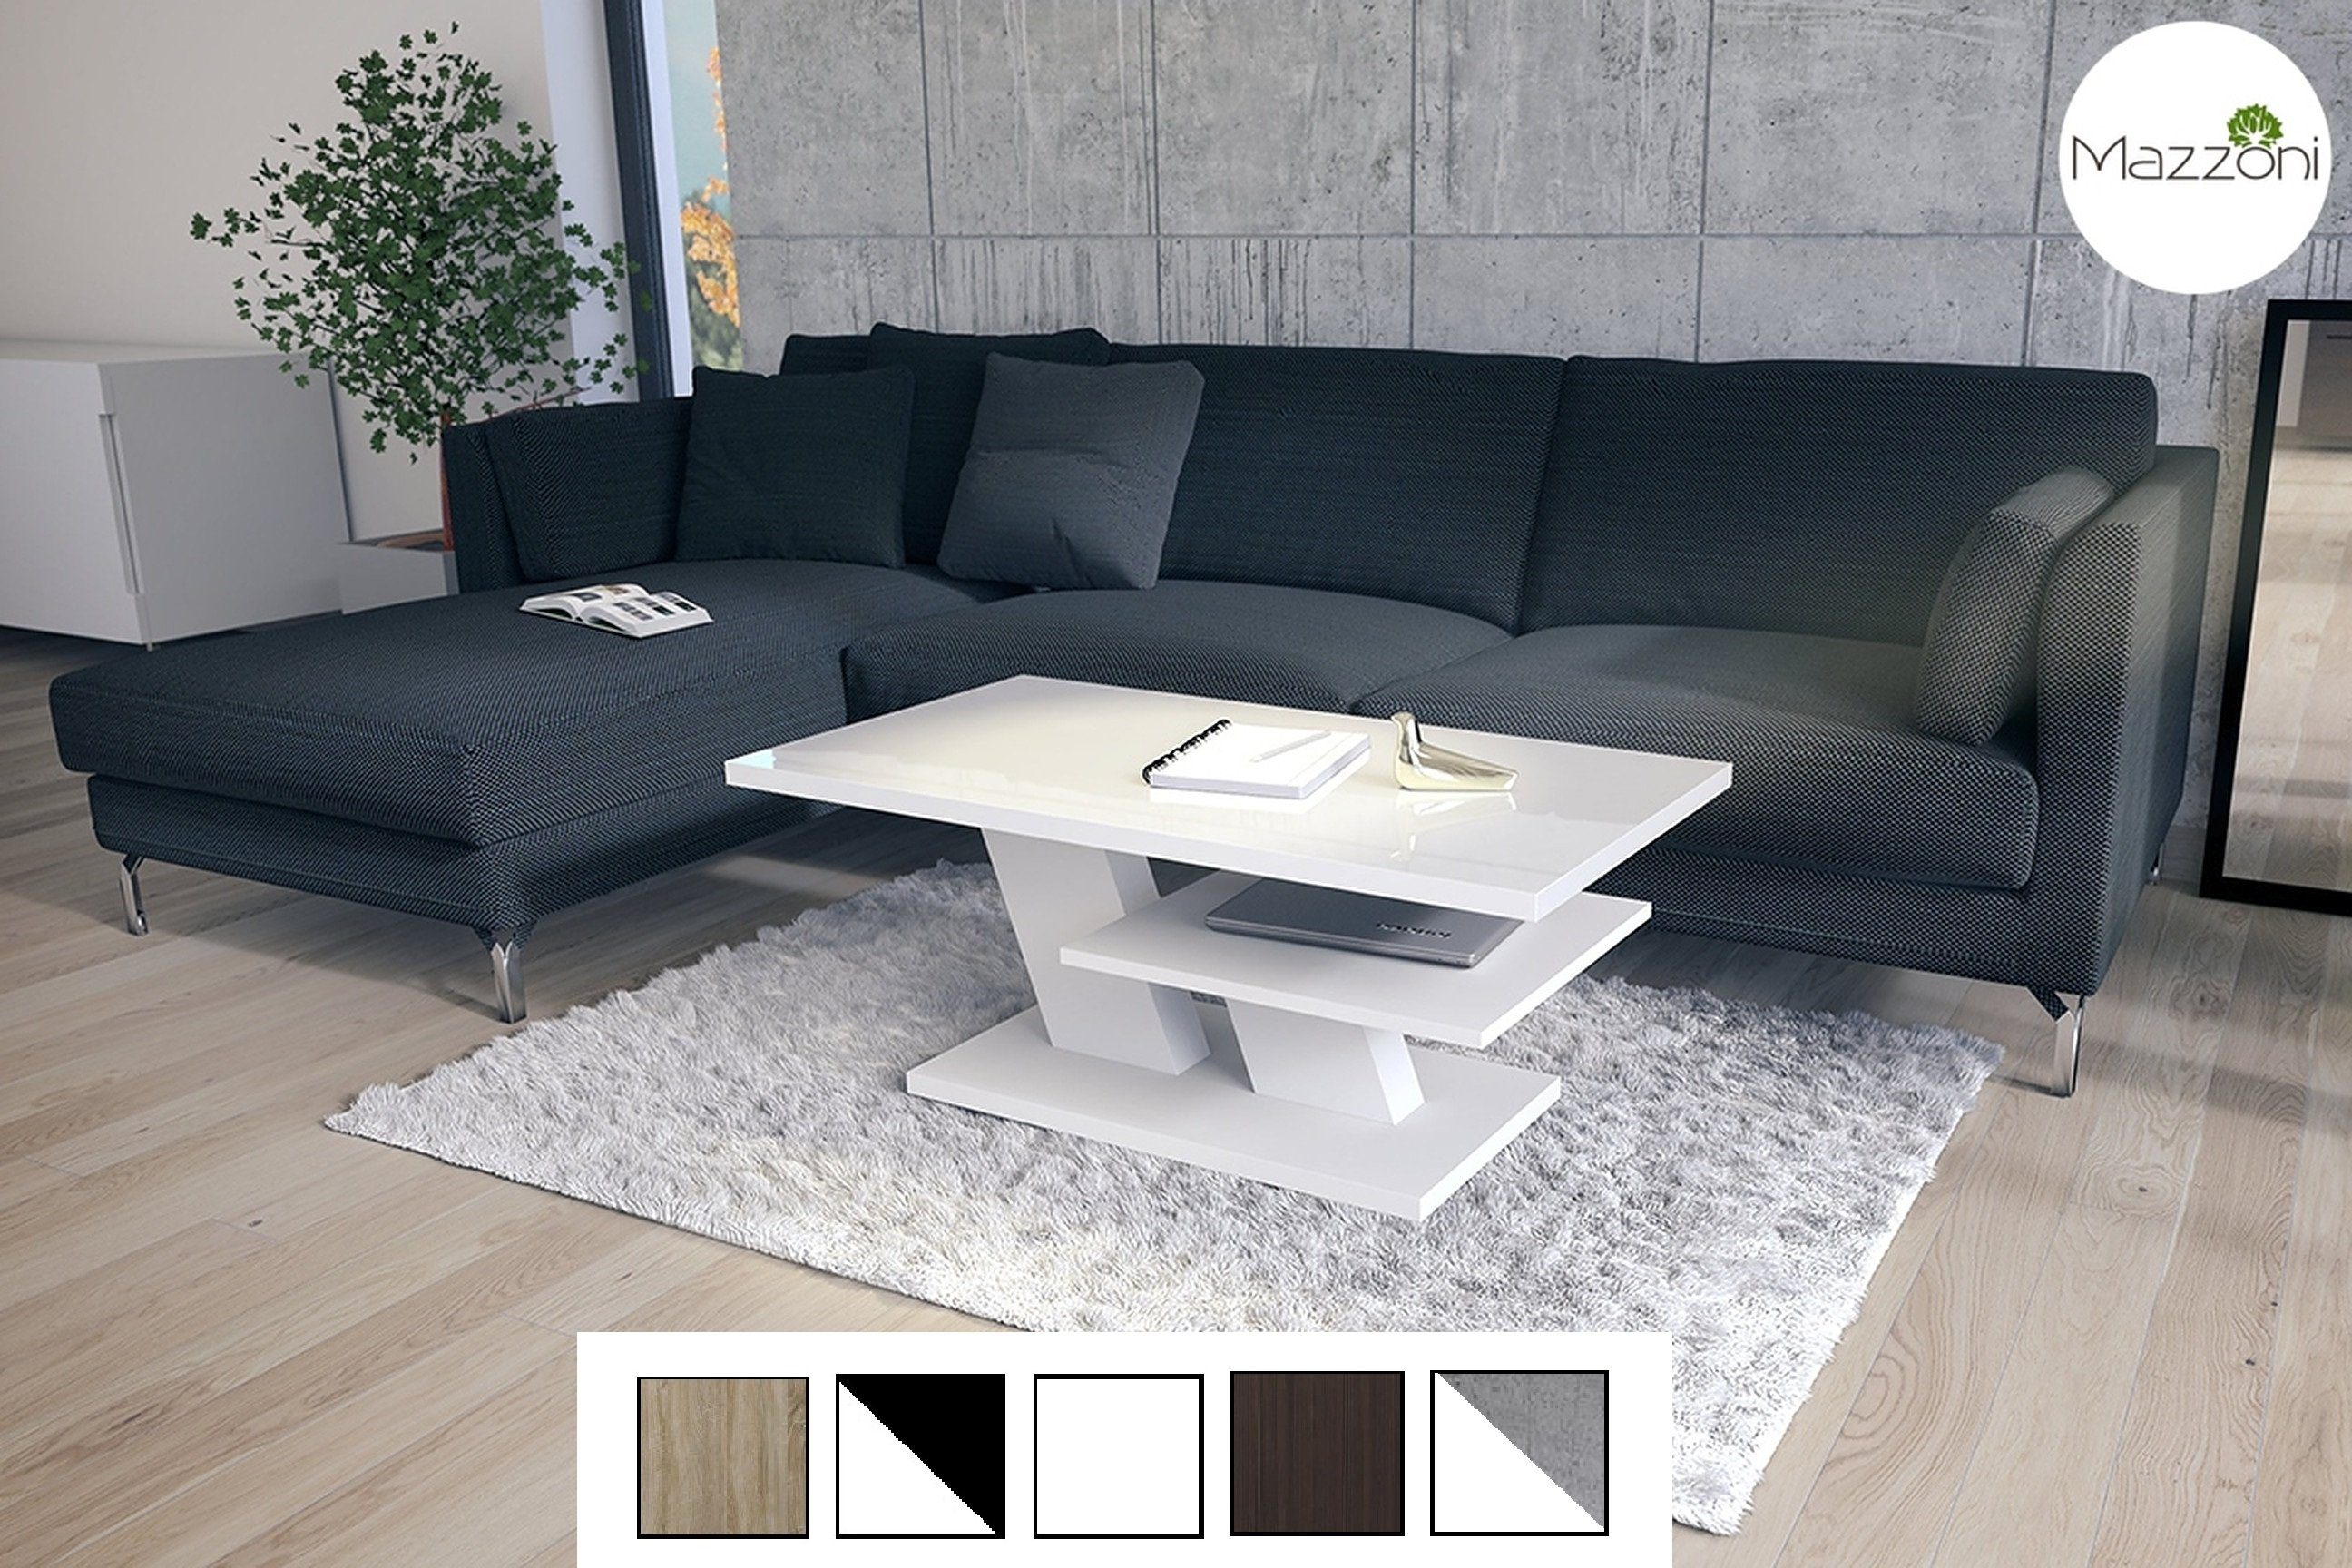 Mazzoni Couchtisch Cliff Hochglanz 110x60x45cm Wohnzimmertisch Weiß Tisch